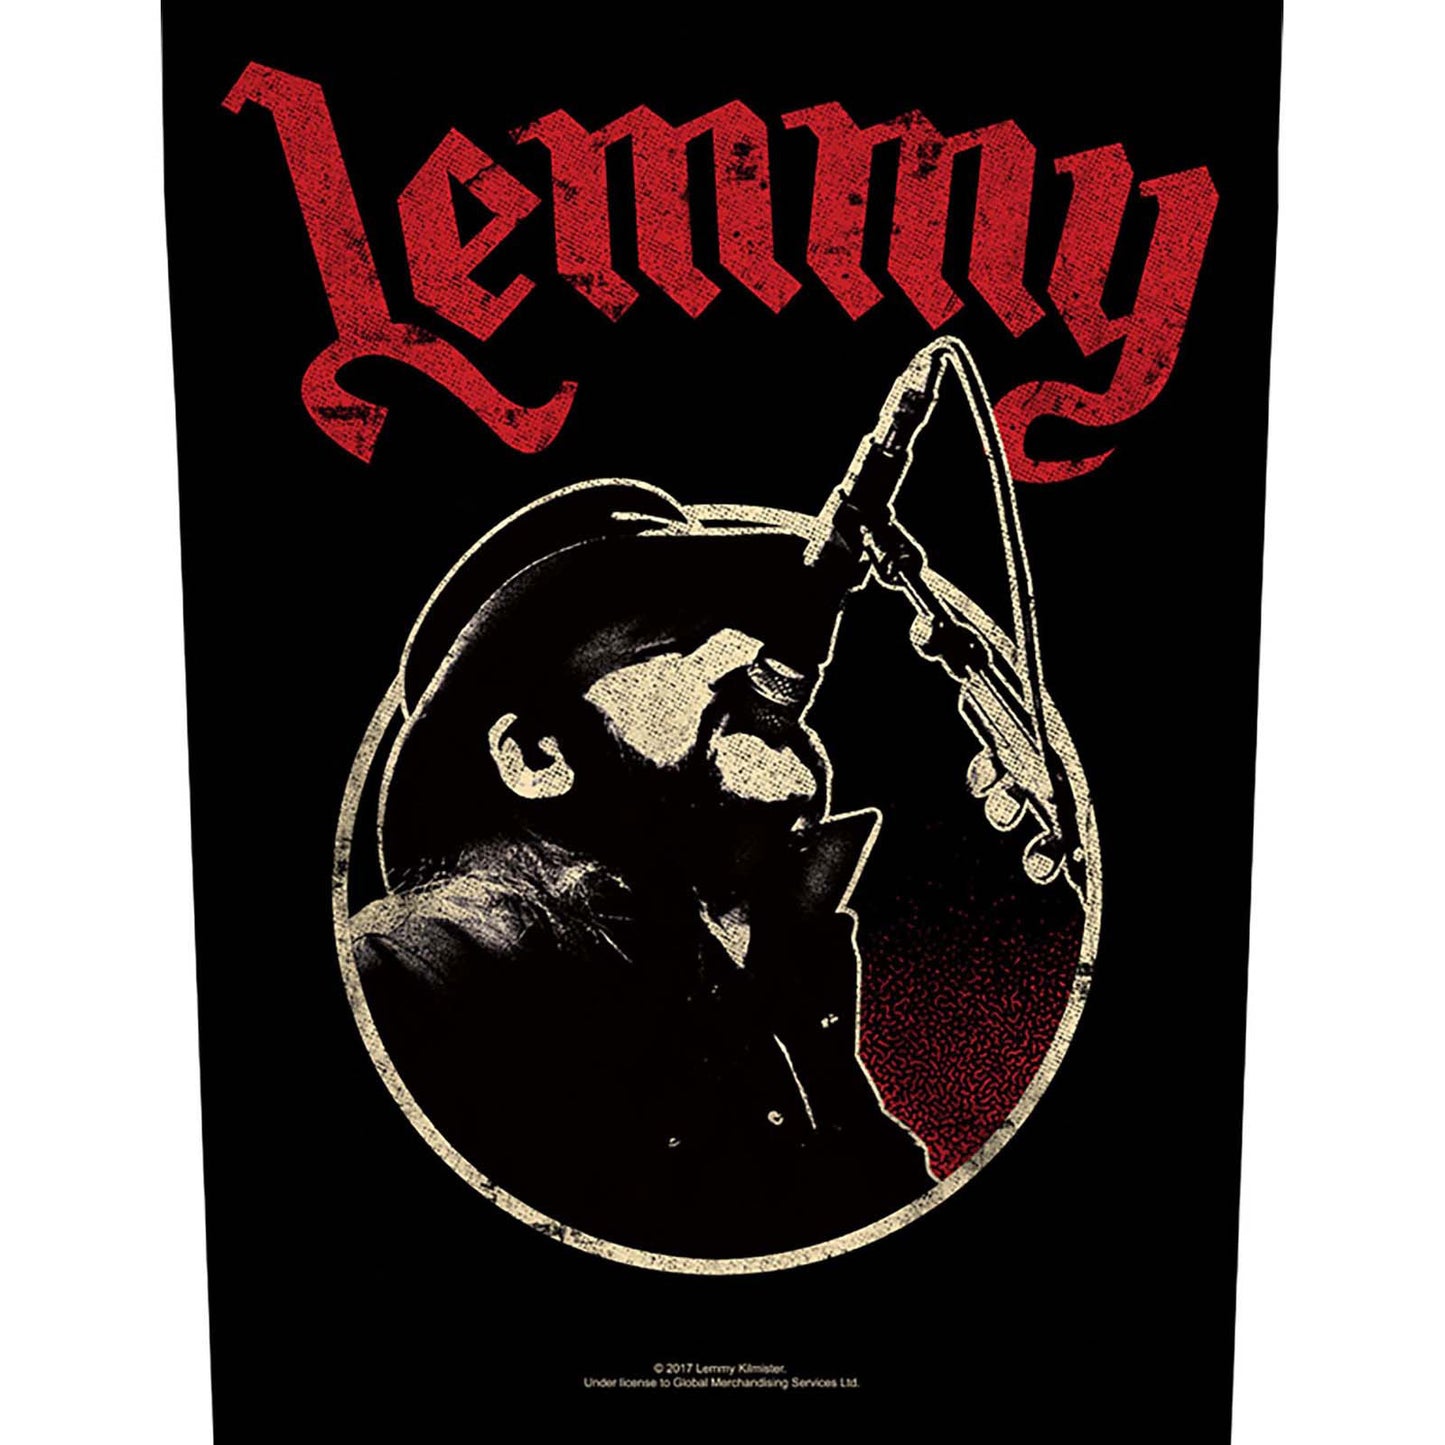 Lemmy Back Patch: Microphone